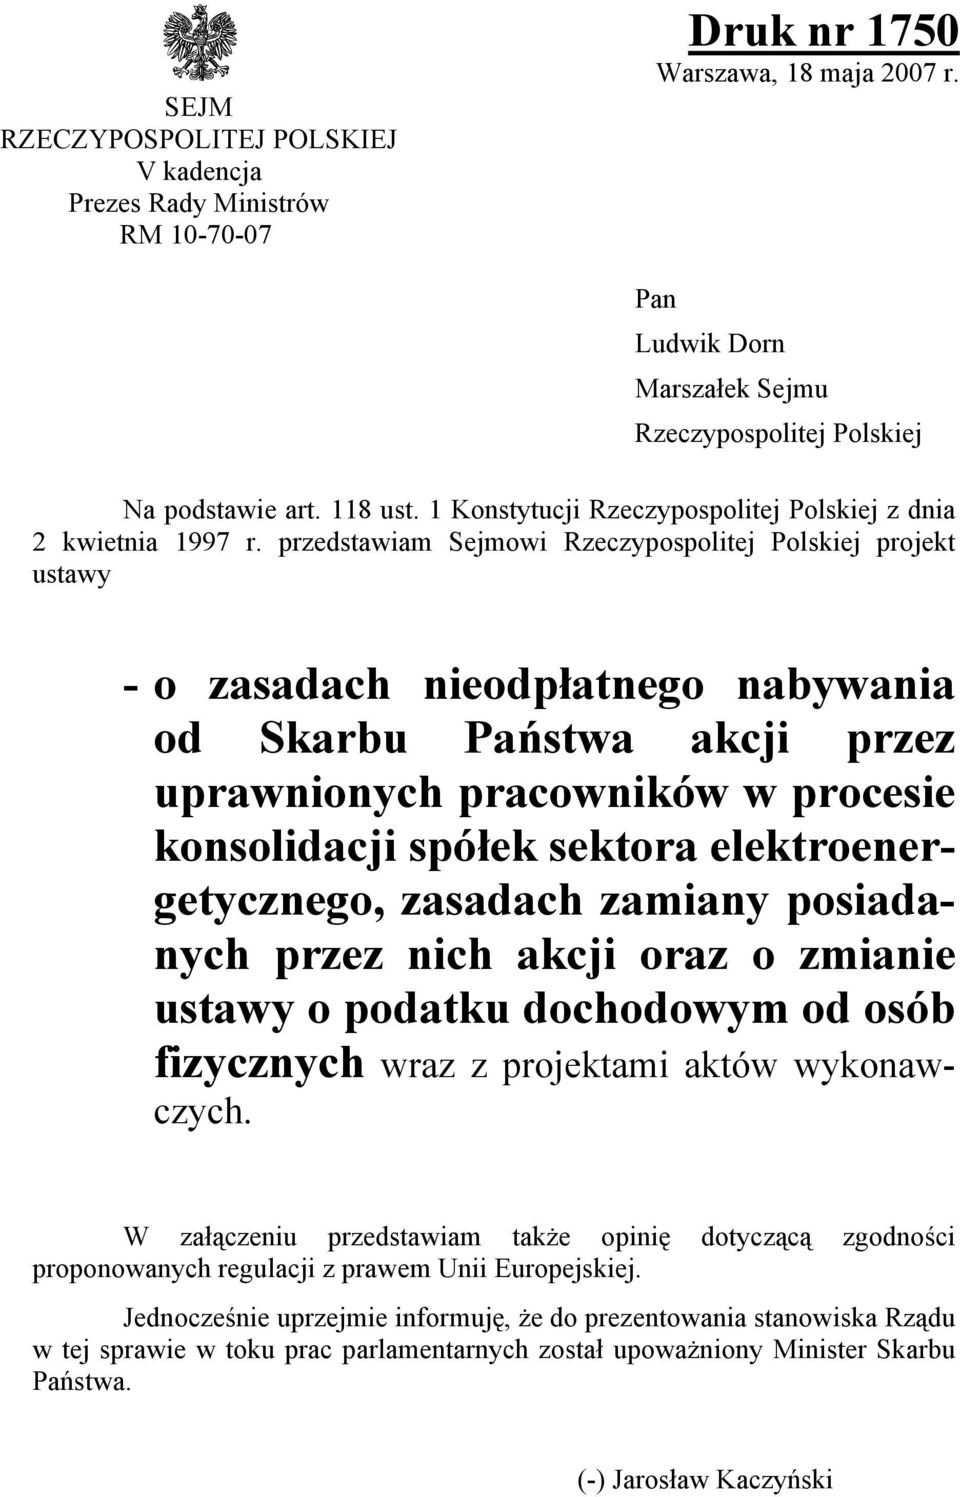 przedstawiam Sejmowi Rzeczypospolitej Polskiej projekt ustawy - o zasadach nieodpłatnego nabywania od Skarbu Państwa akcji przez uprawnionych pracowników w procesie konsolidacji spółek sektora